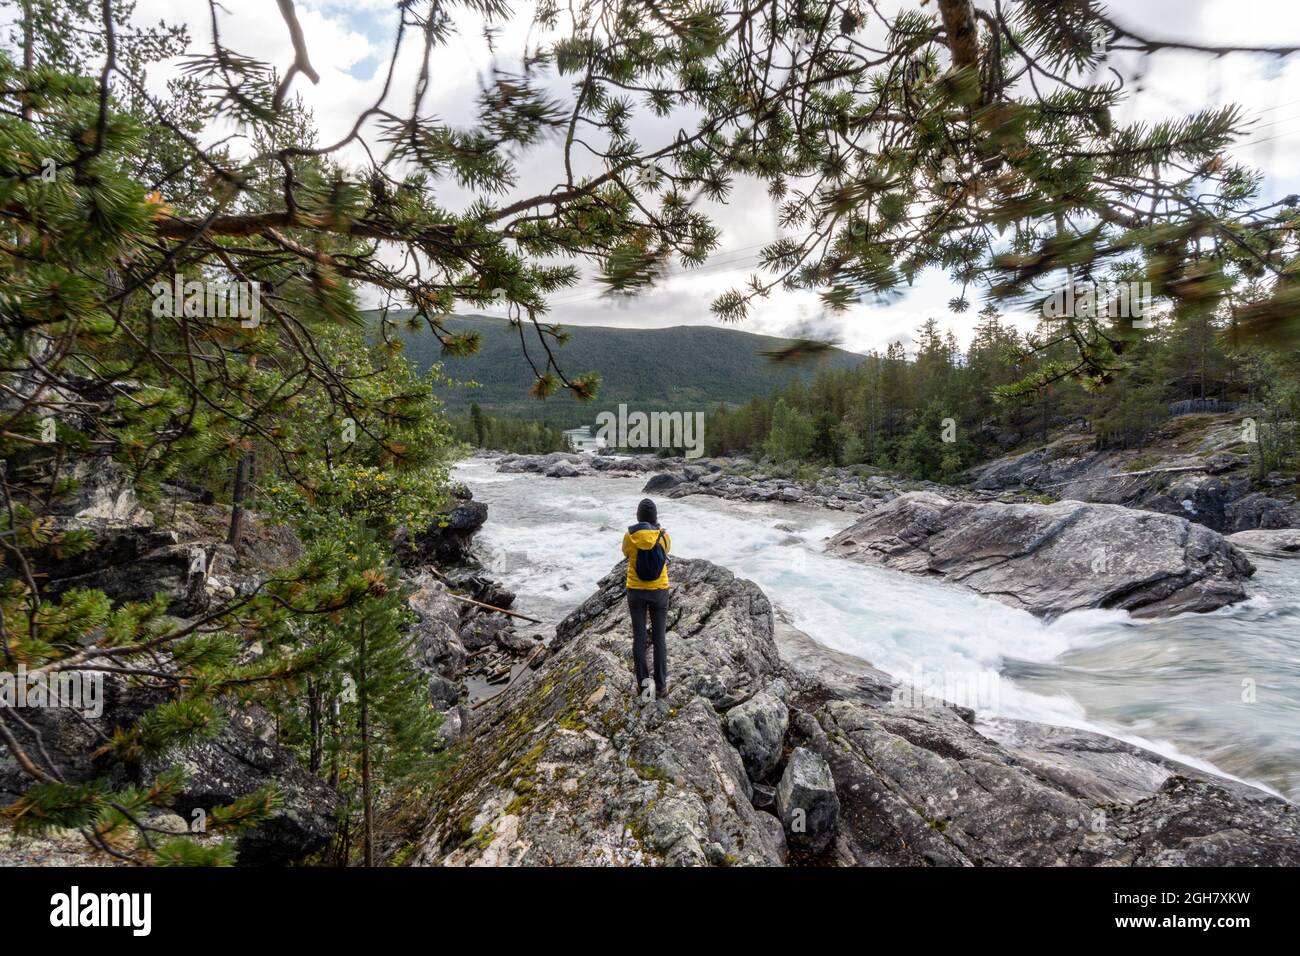 Rückansicht einer Person in einer gelben Jacke, die Fotos vom Pollfoss-Wasserfall, dem Fluss Otta, Oppland, Norwegen, macht Stockfoto